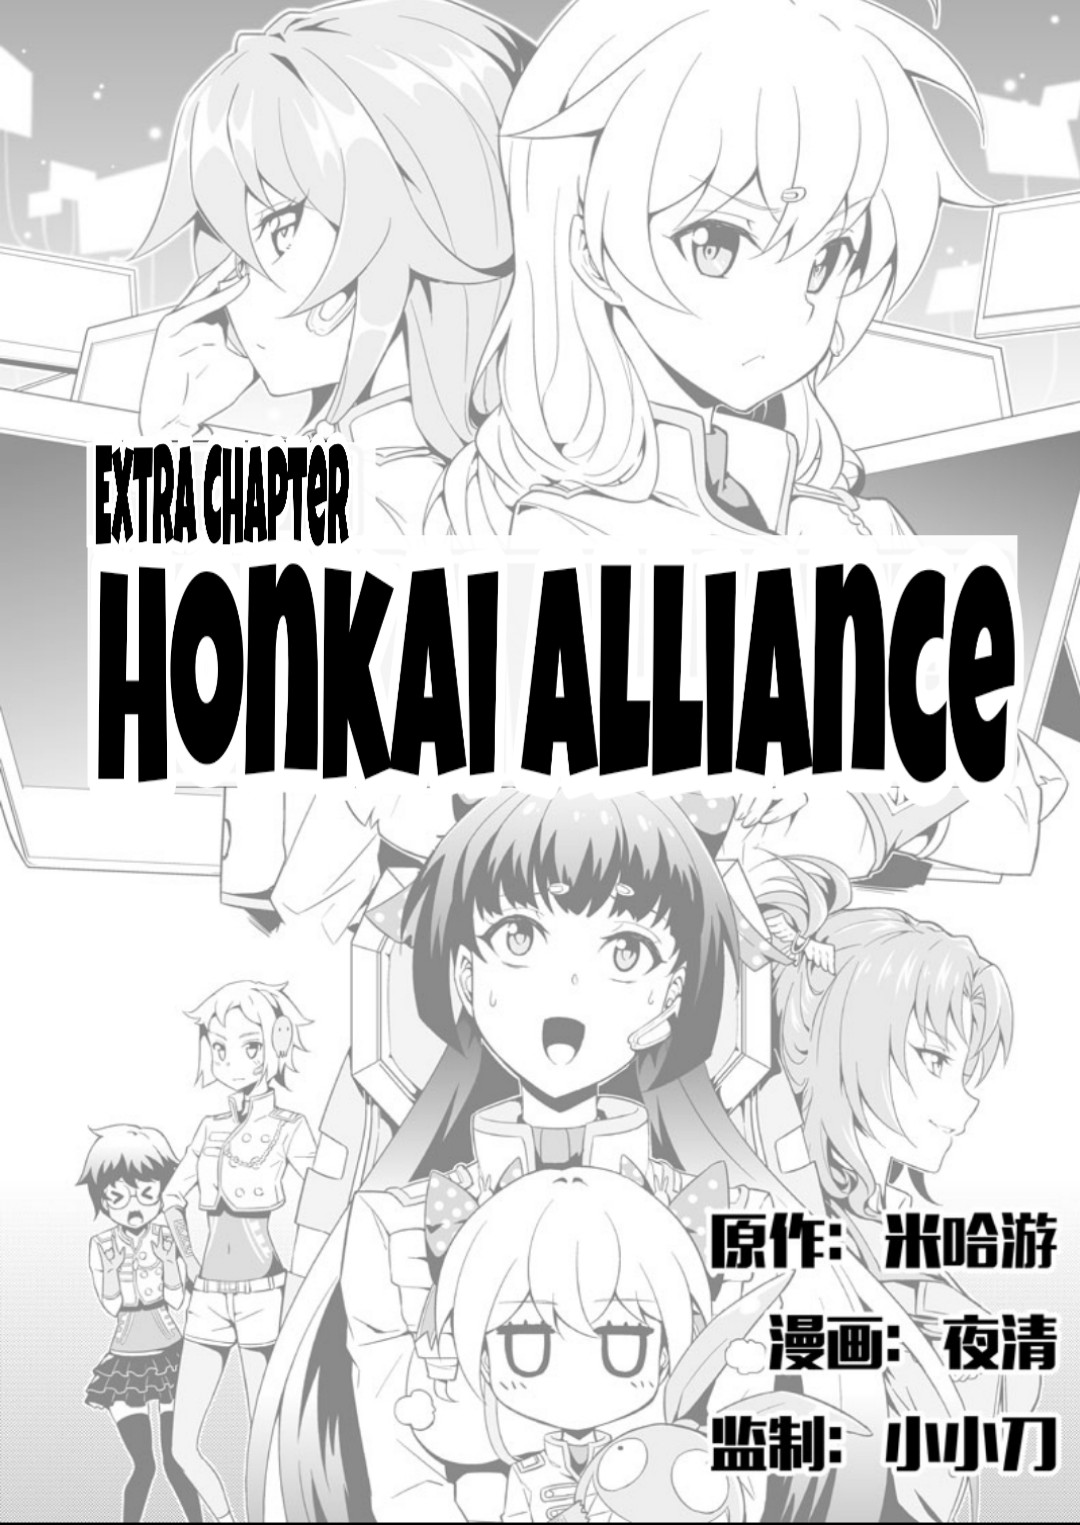 Houkai Gakuen EX Side stories Vol. 5 Honkai Alliance